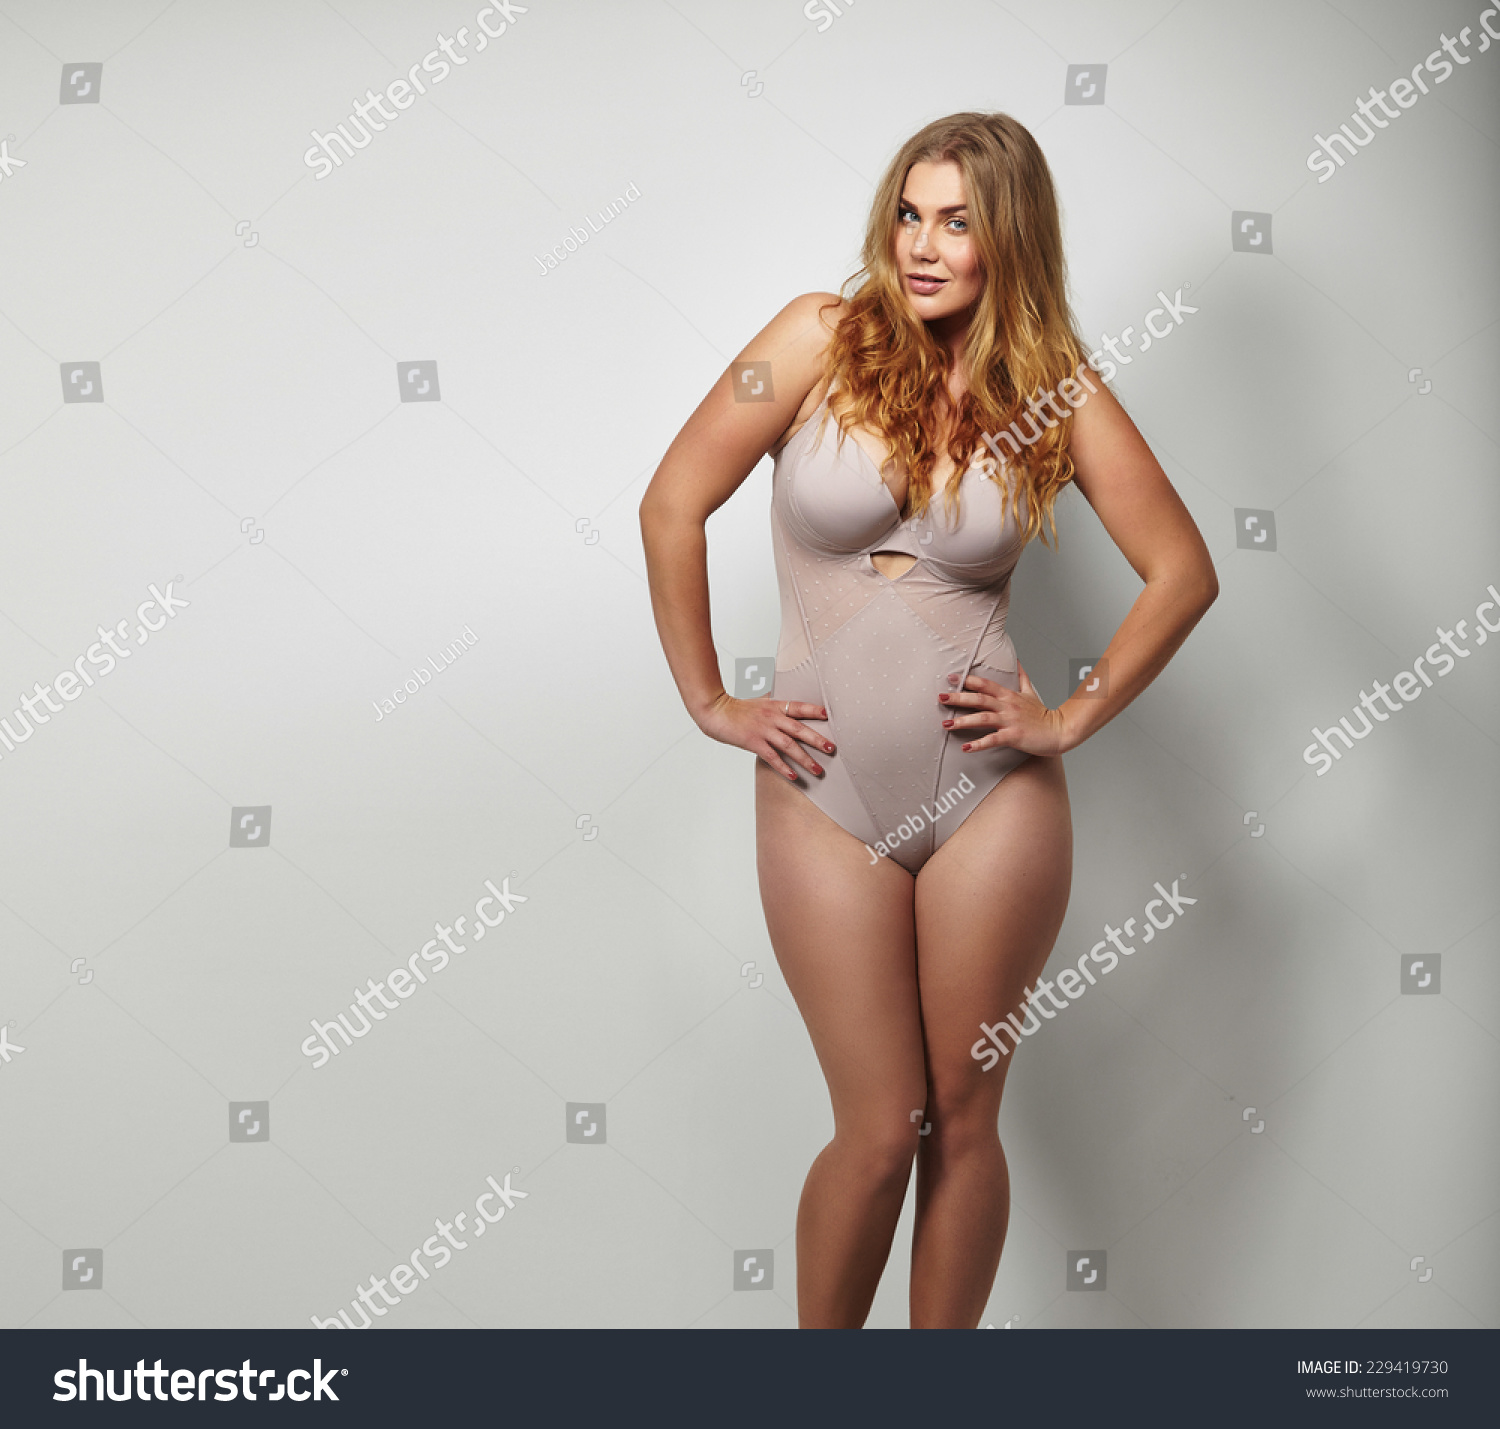 Illustrations Of Fat Women Having Sex 64